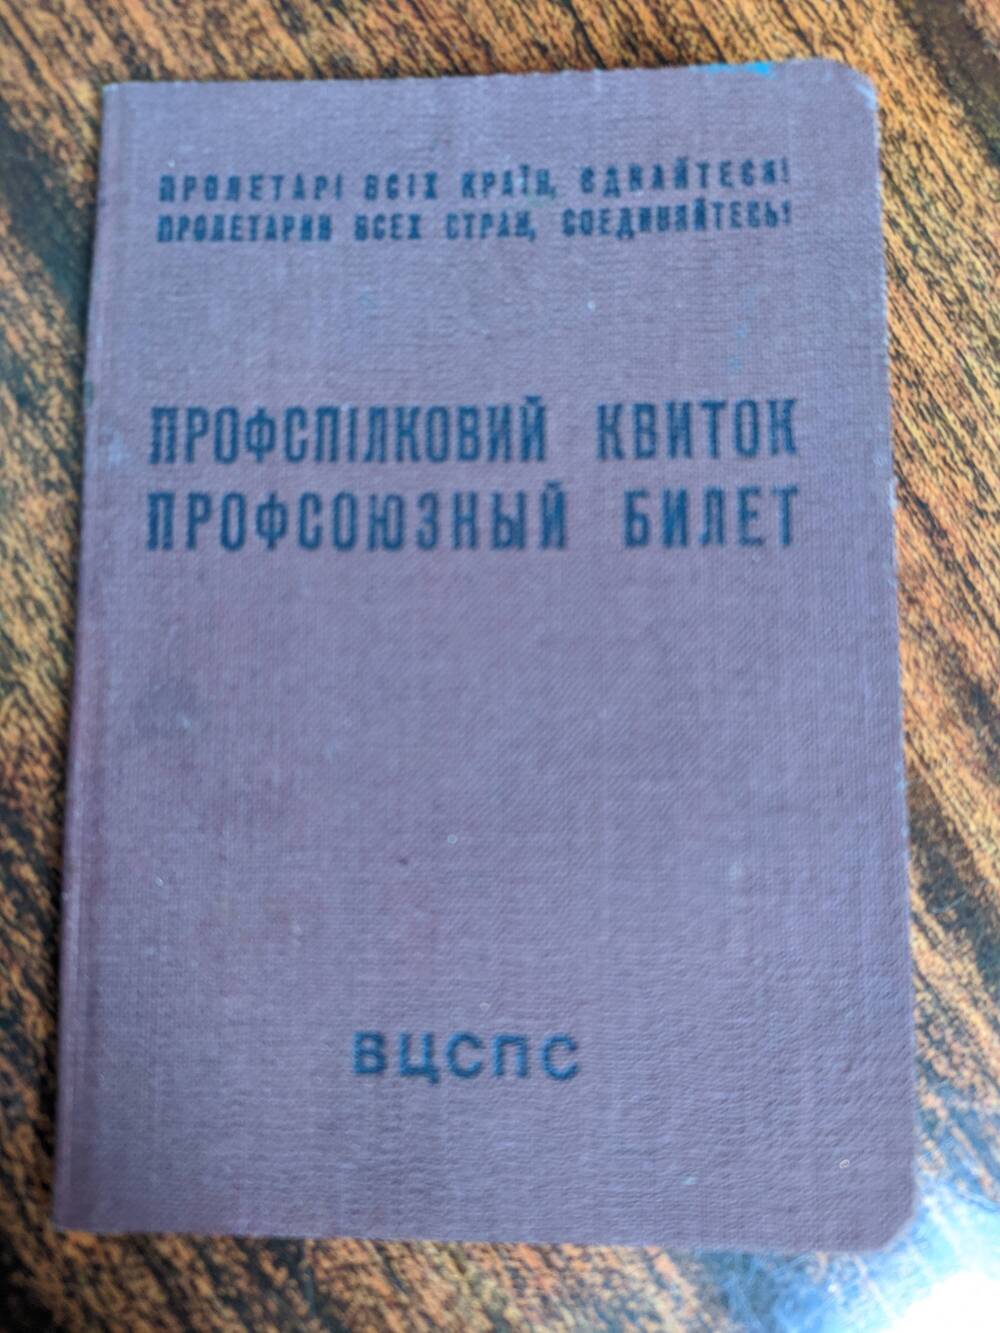 Профсоюзный билет Старшинова Н.В. 1959 г.